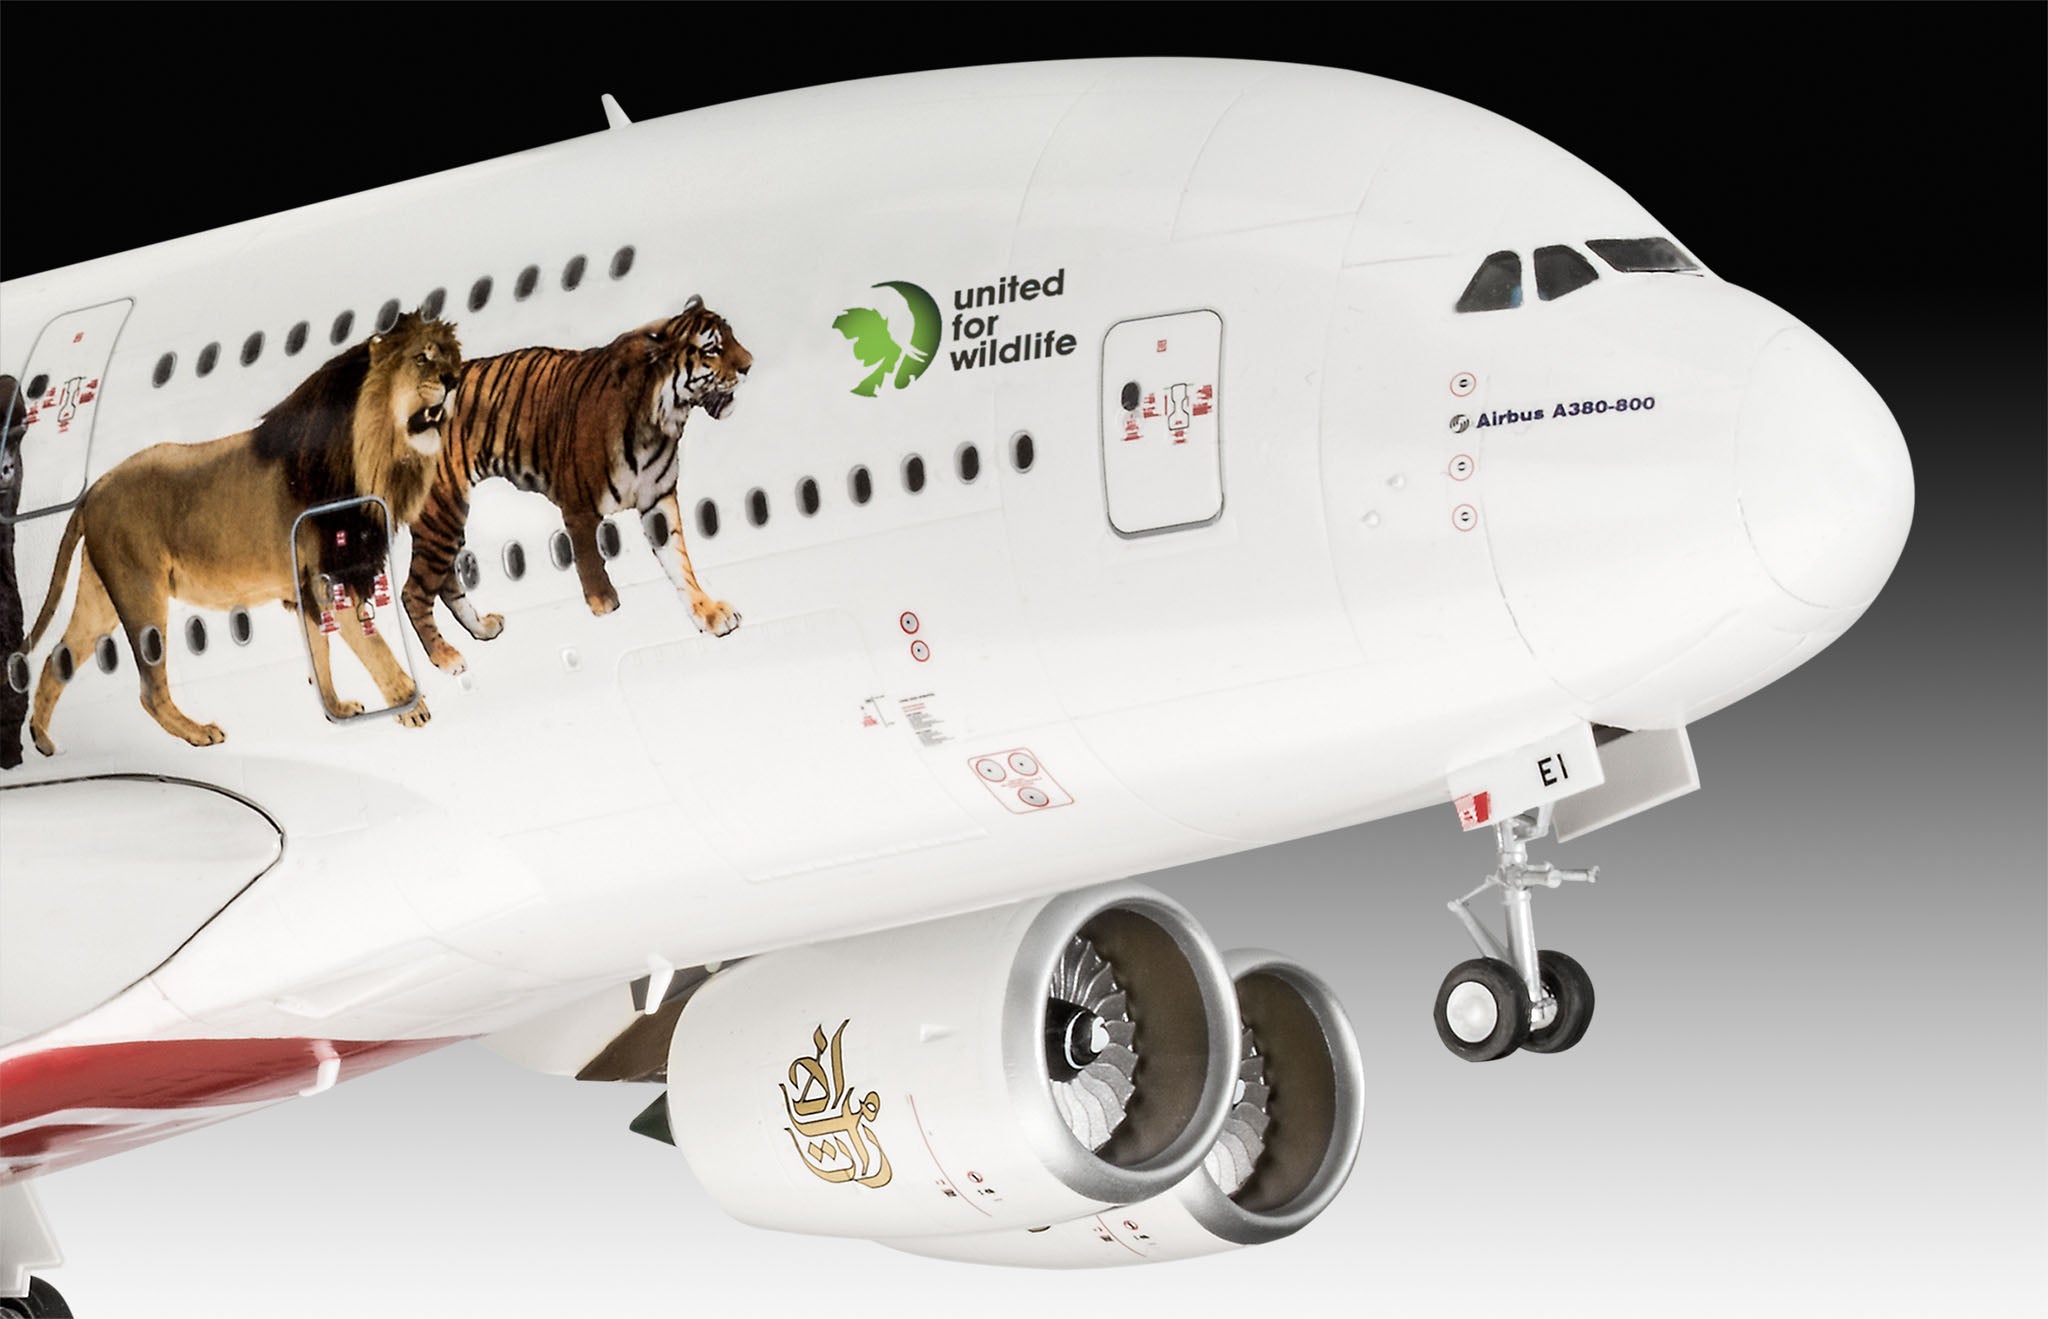 Plane Model Kit Revell Airbus A380-800 Emirates United for Wildlife 1:144 Alternate 1